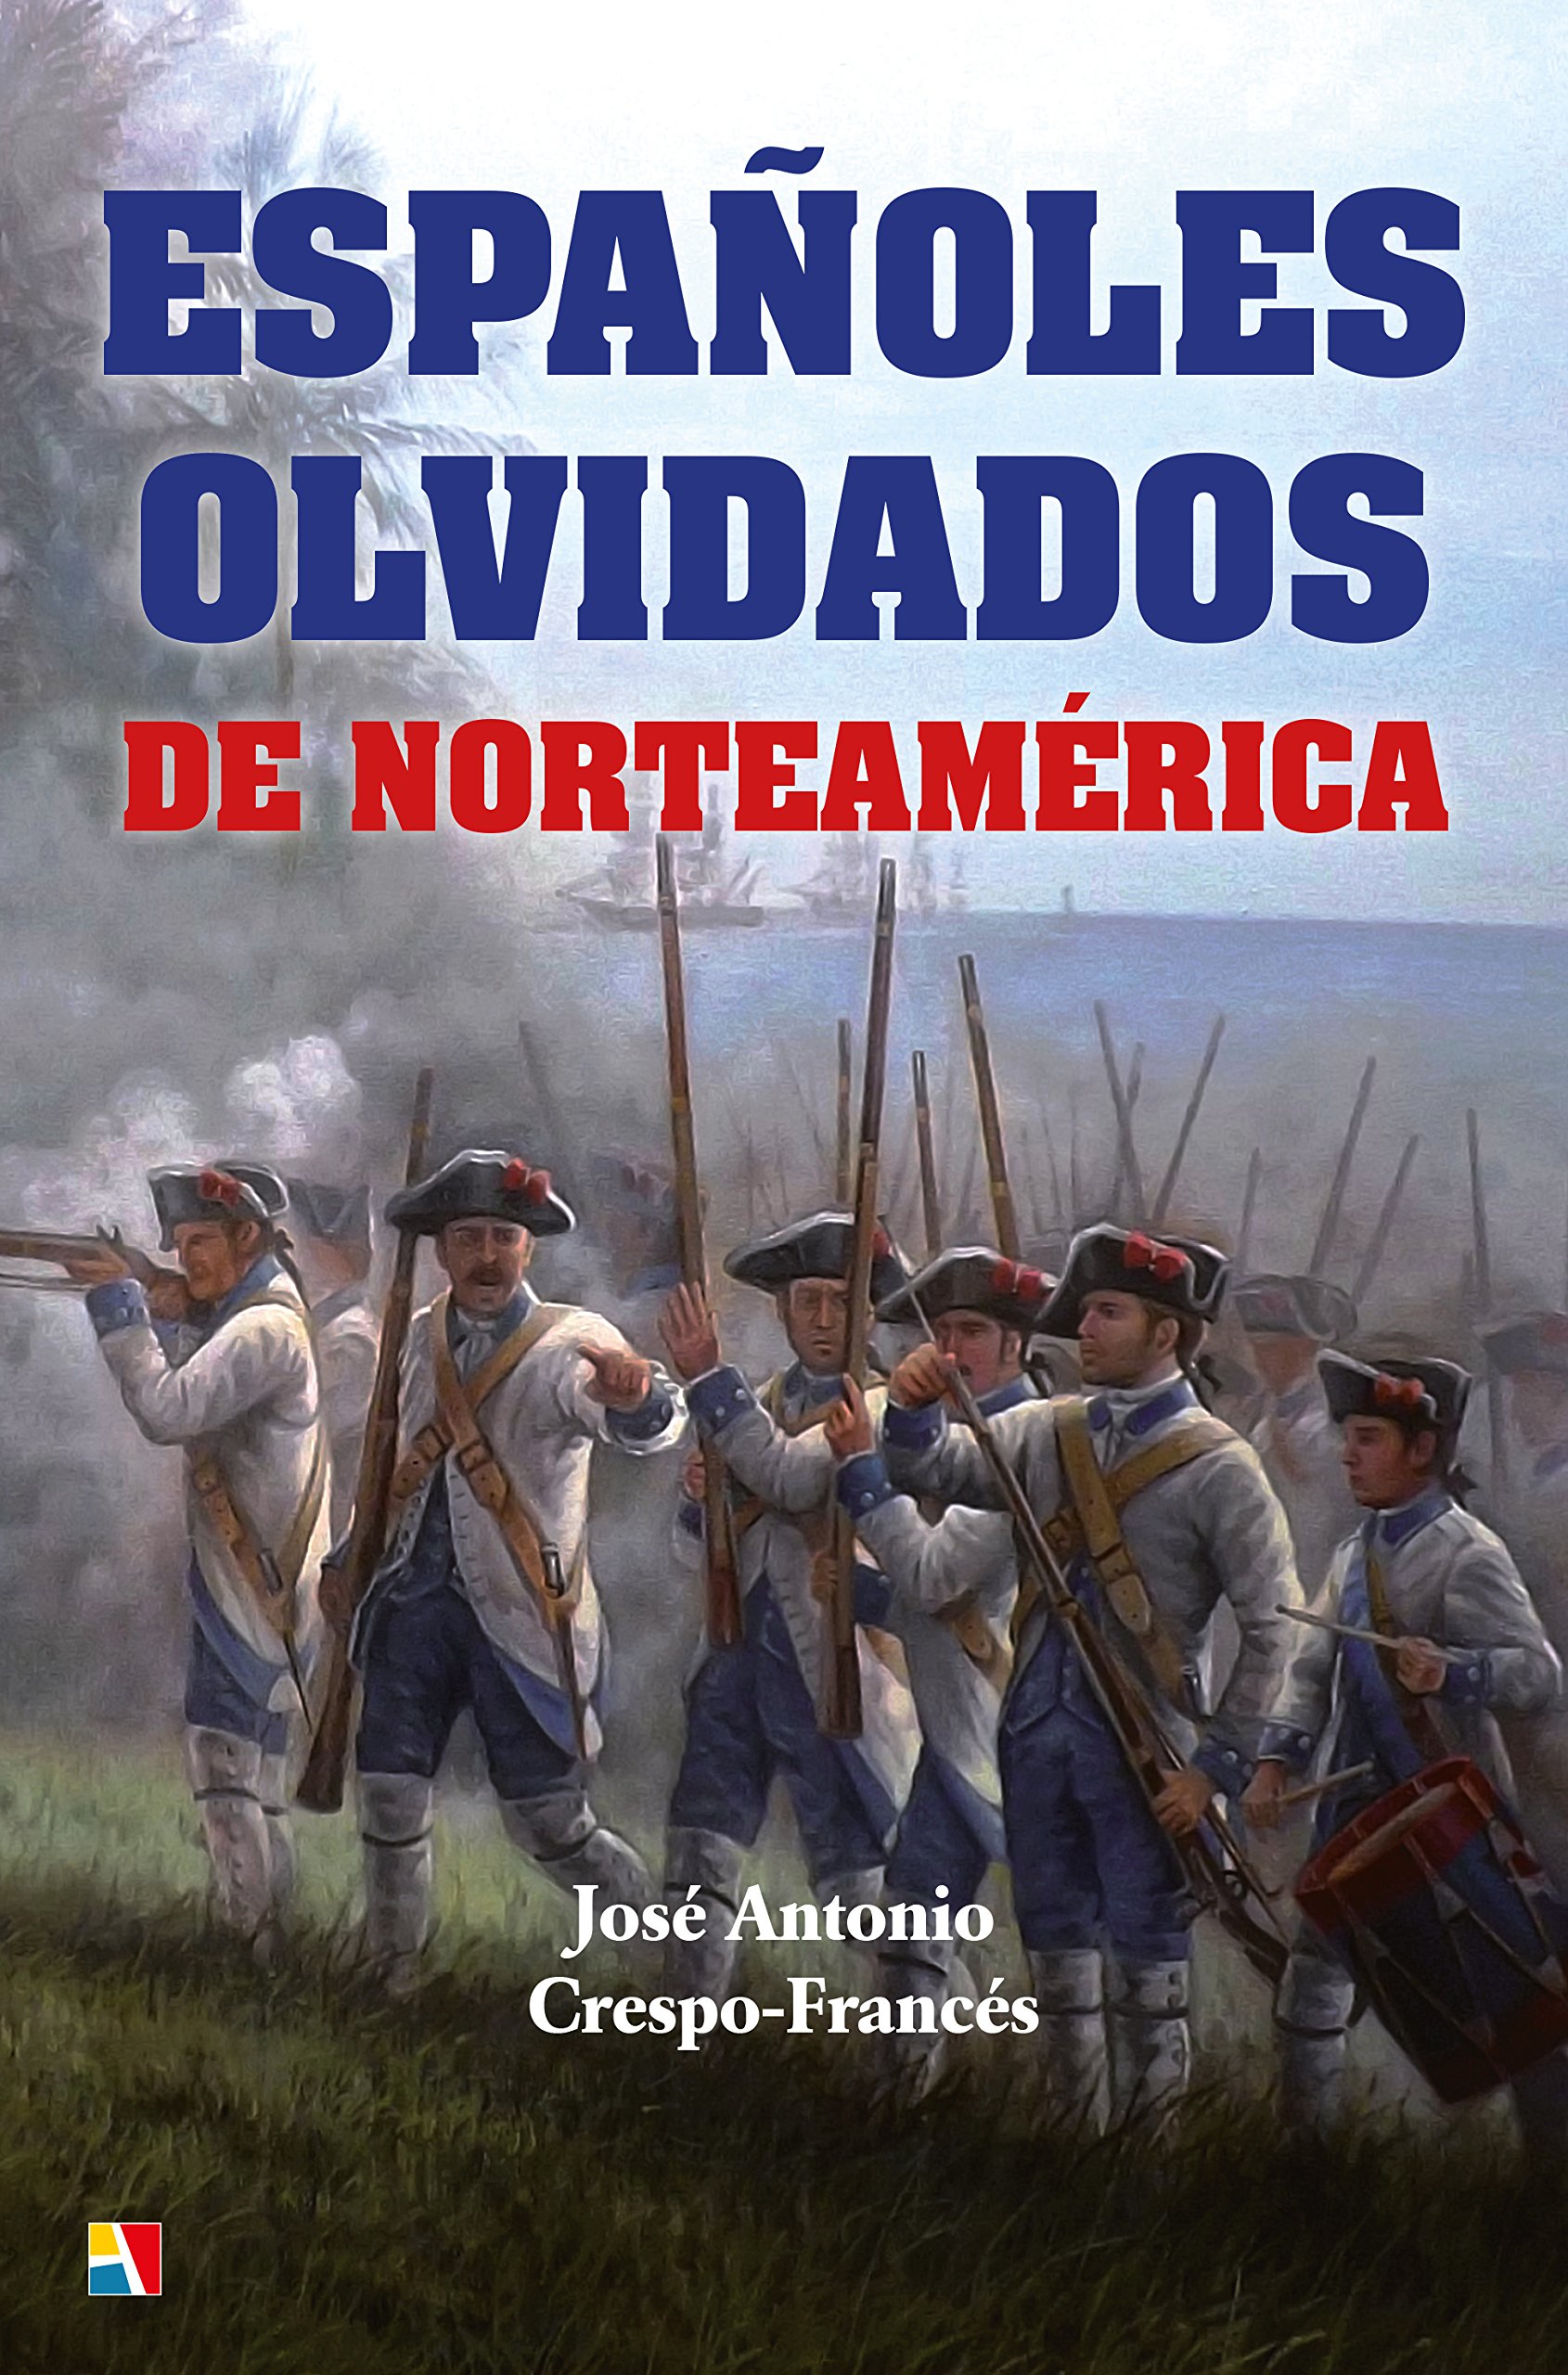 Imagen de portada del libro Españoles olvidados de Norteamérica